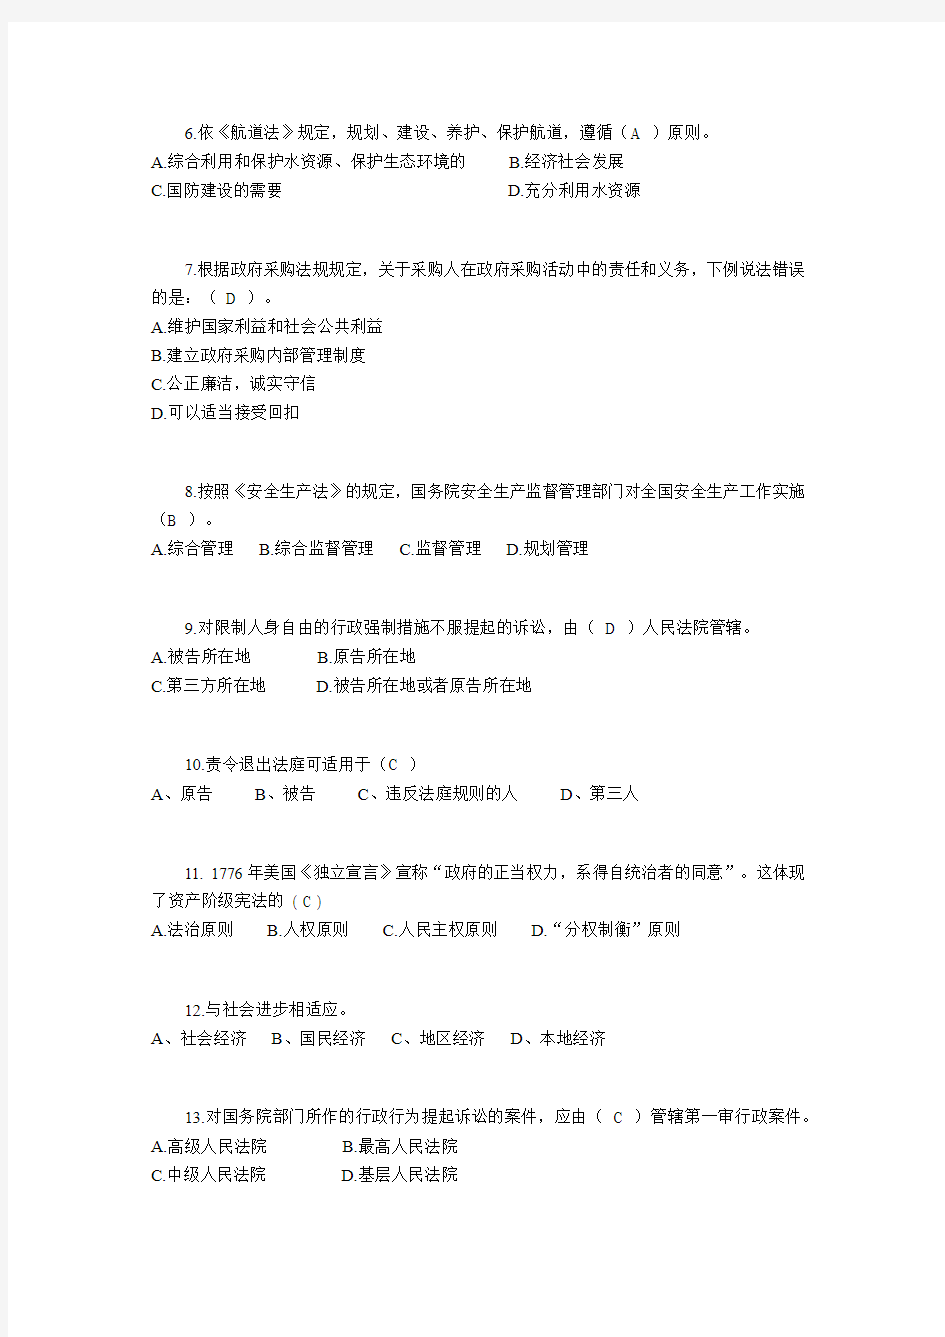 2016年陕西省司法考试冲刺考试试题